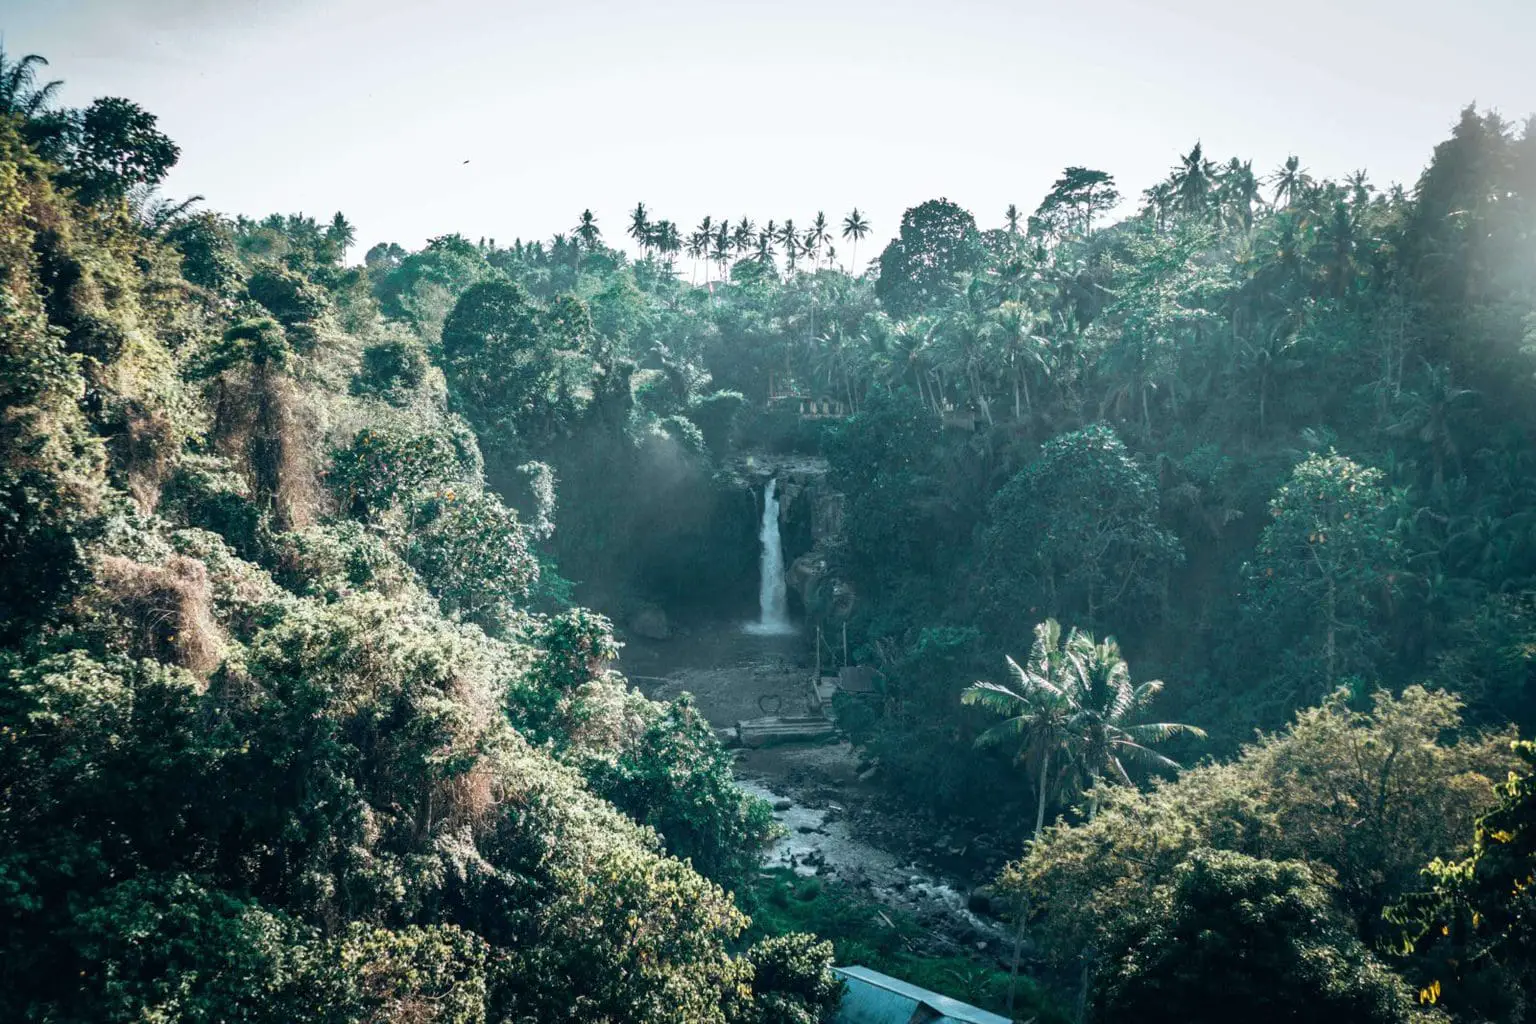 Ubud Waterfall - Tegenungan Waterfall from far